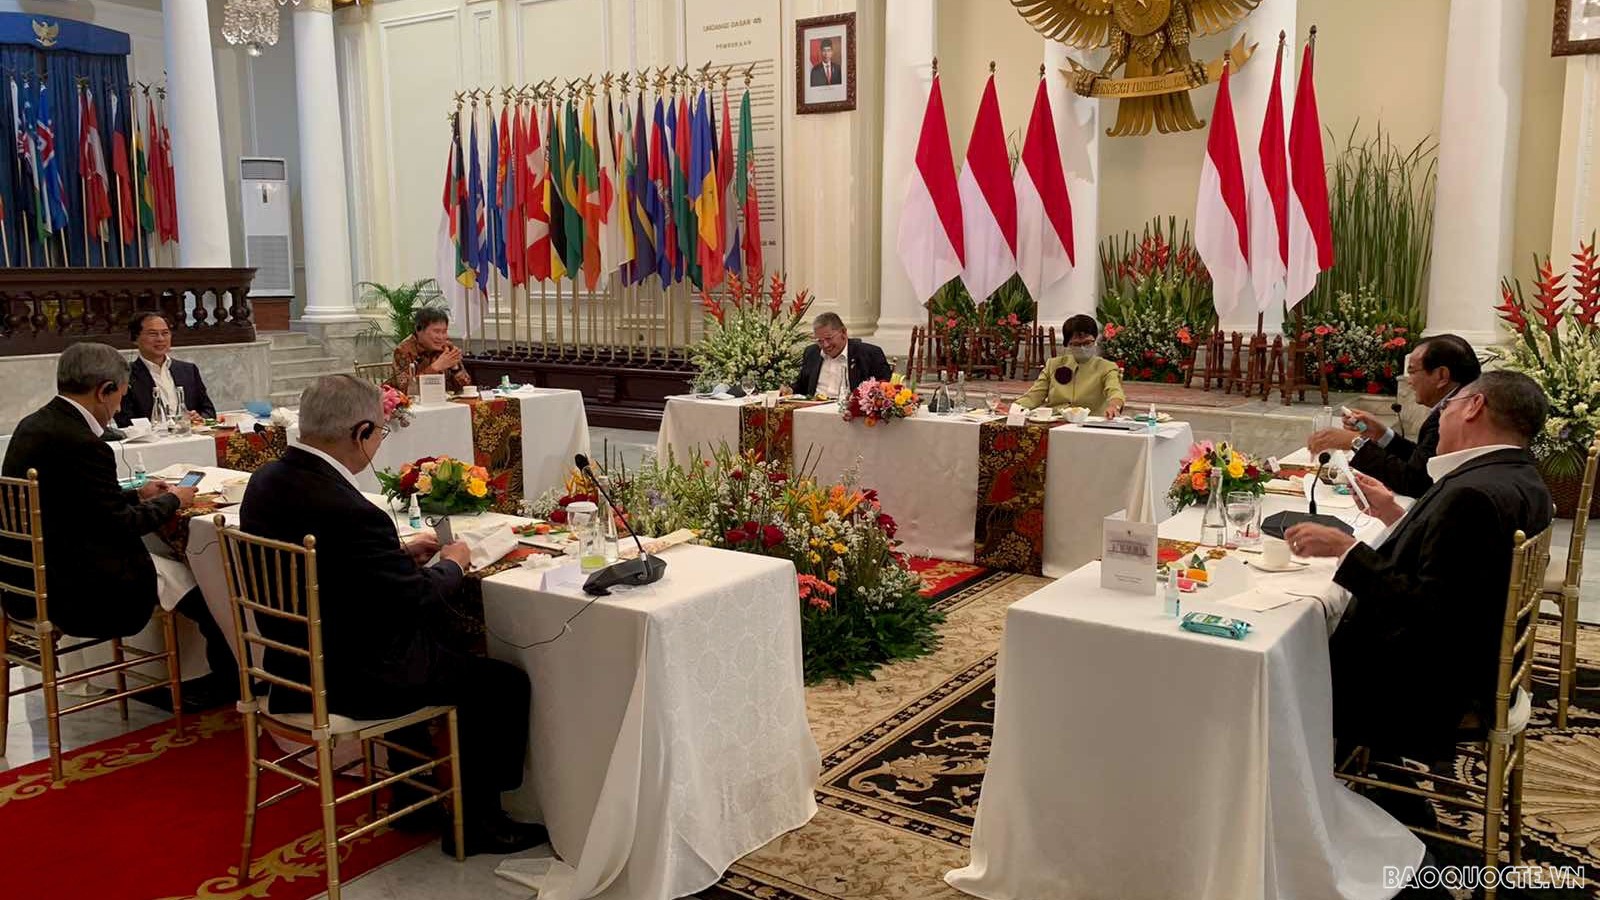 Bộ trưởng Bùi Thanh Sơn tham dự ăn tối làm việc của các Bộ trưởng Ngoại giao ASEAN